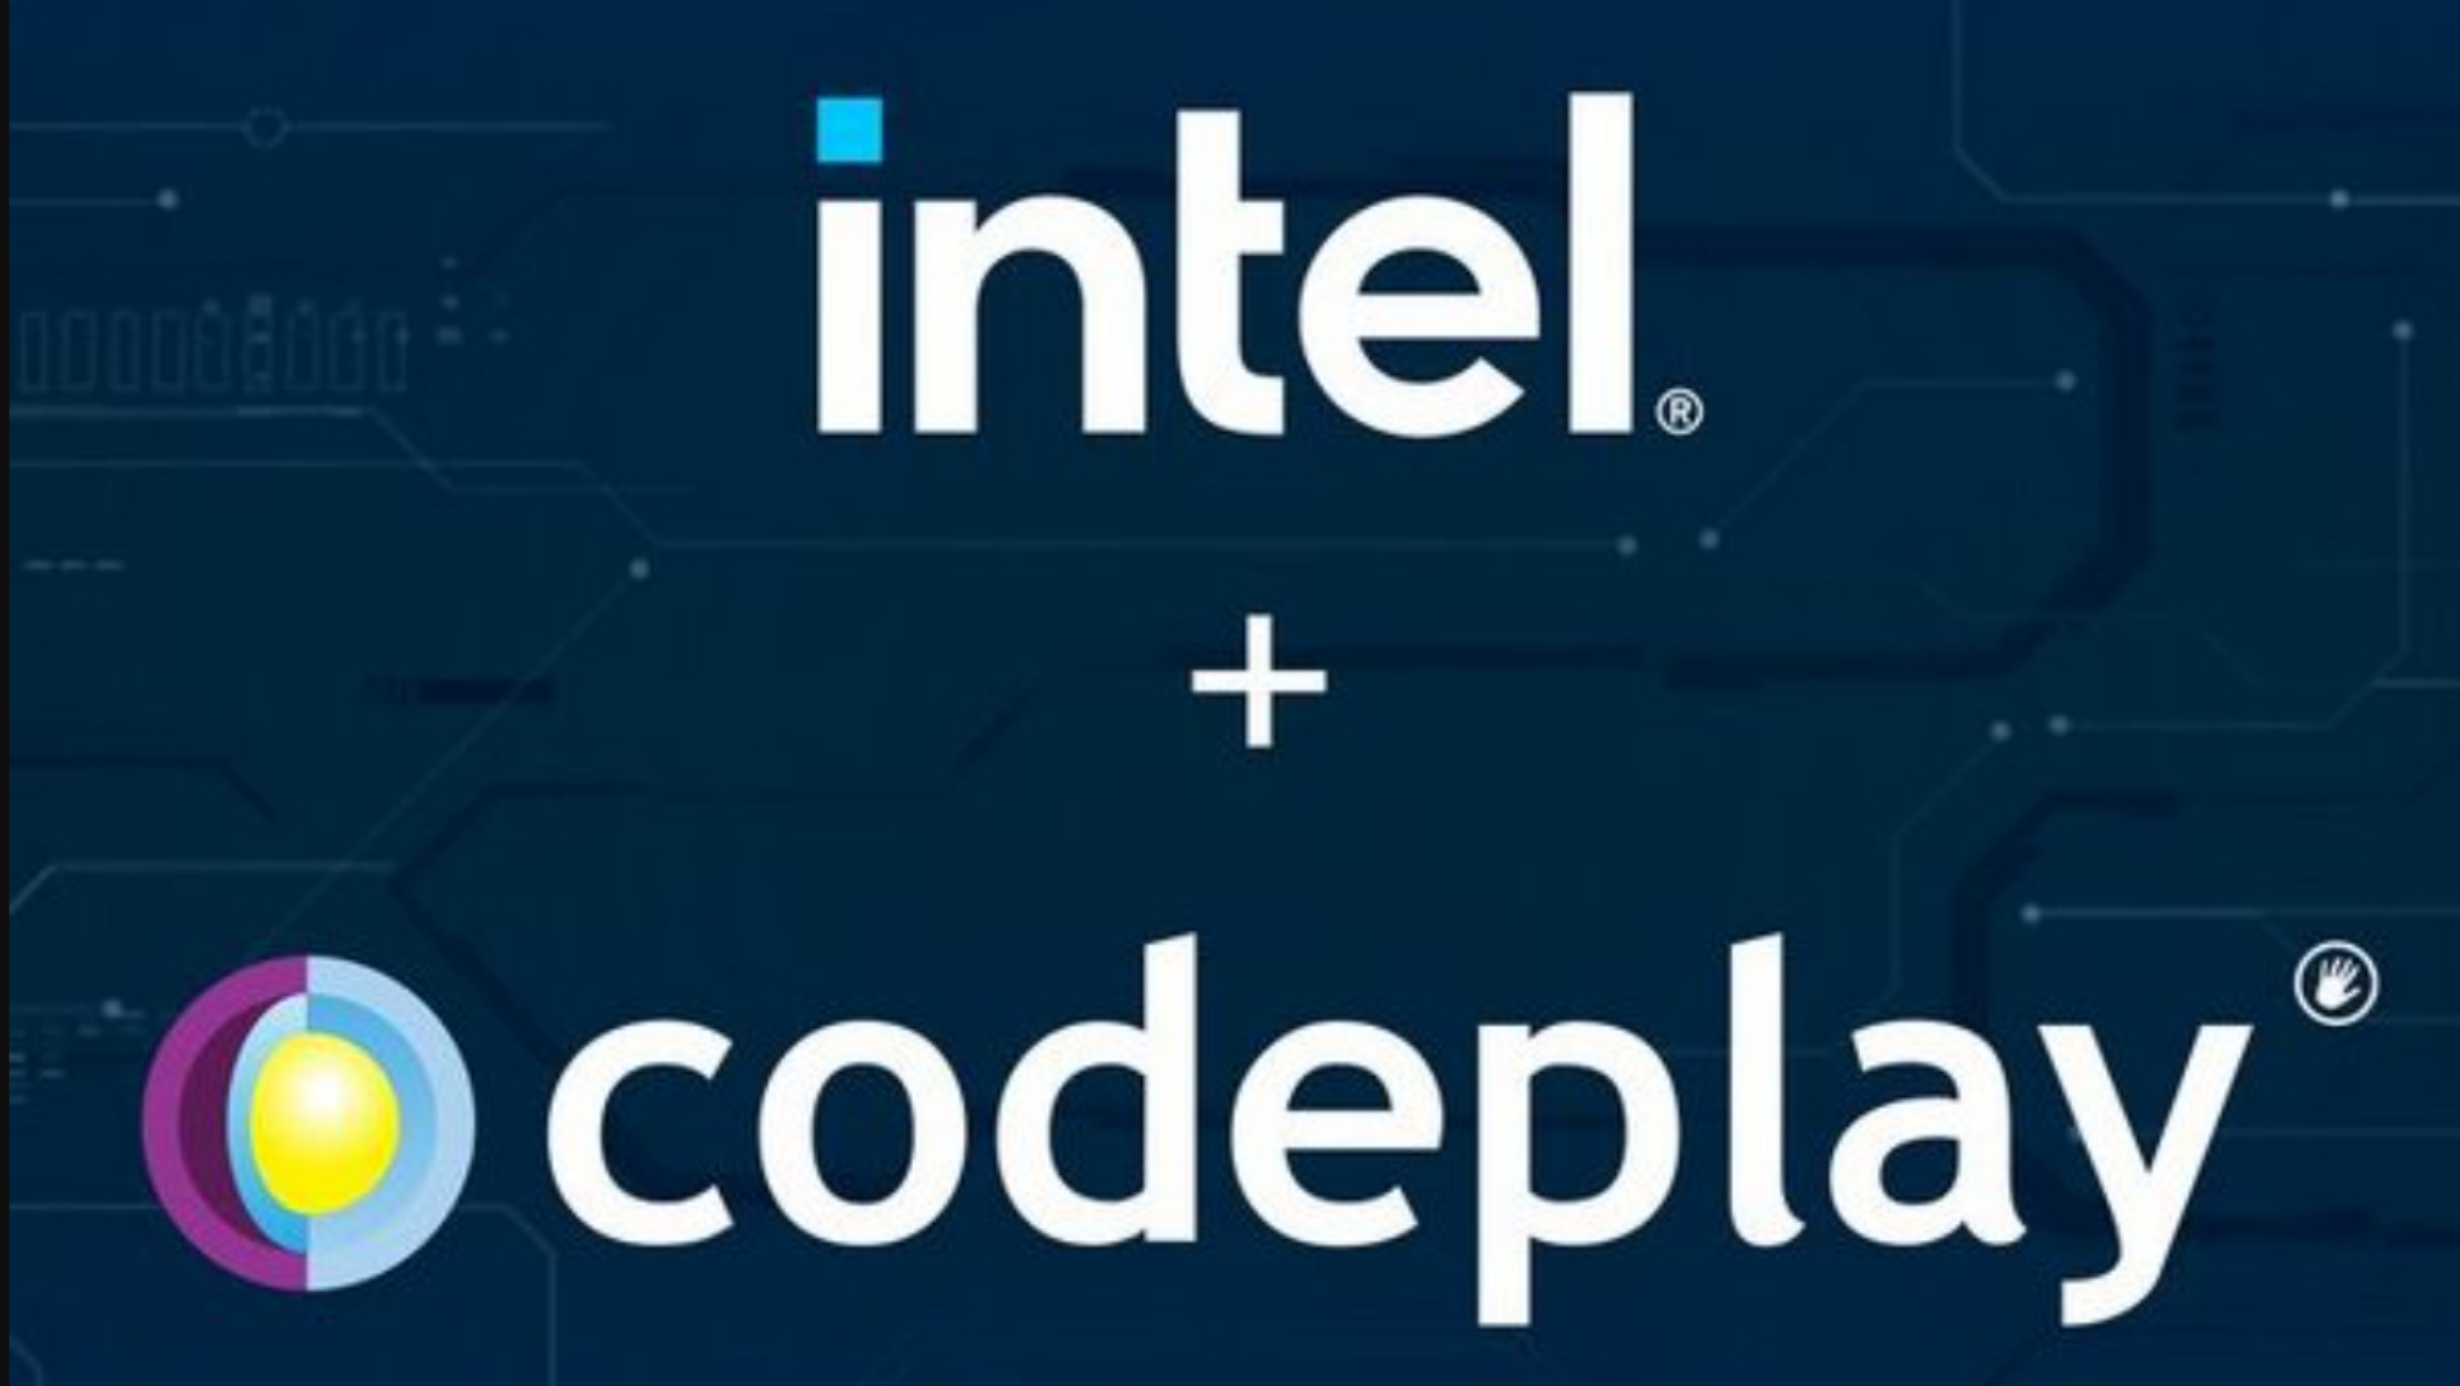 Intel faz outra aquisição de software importante